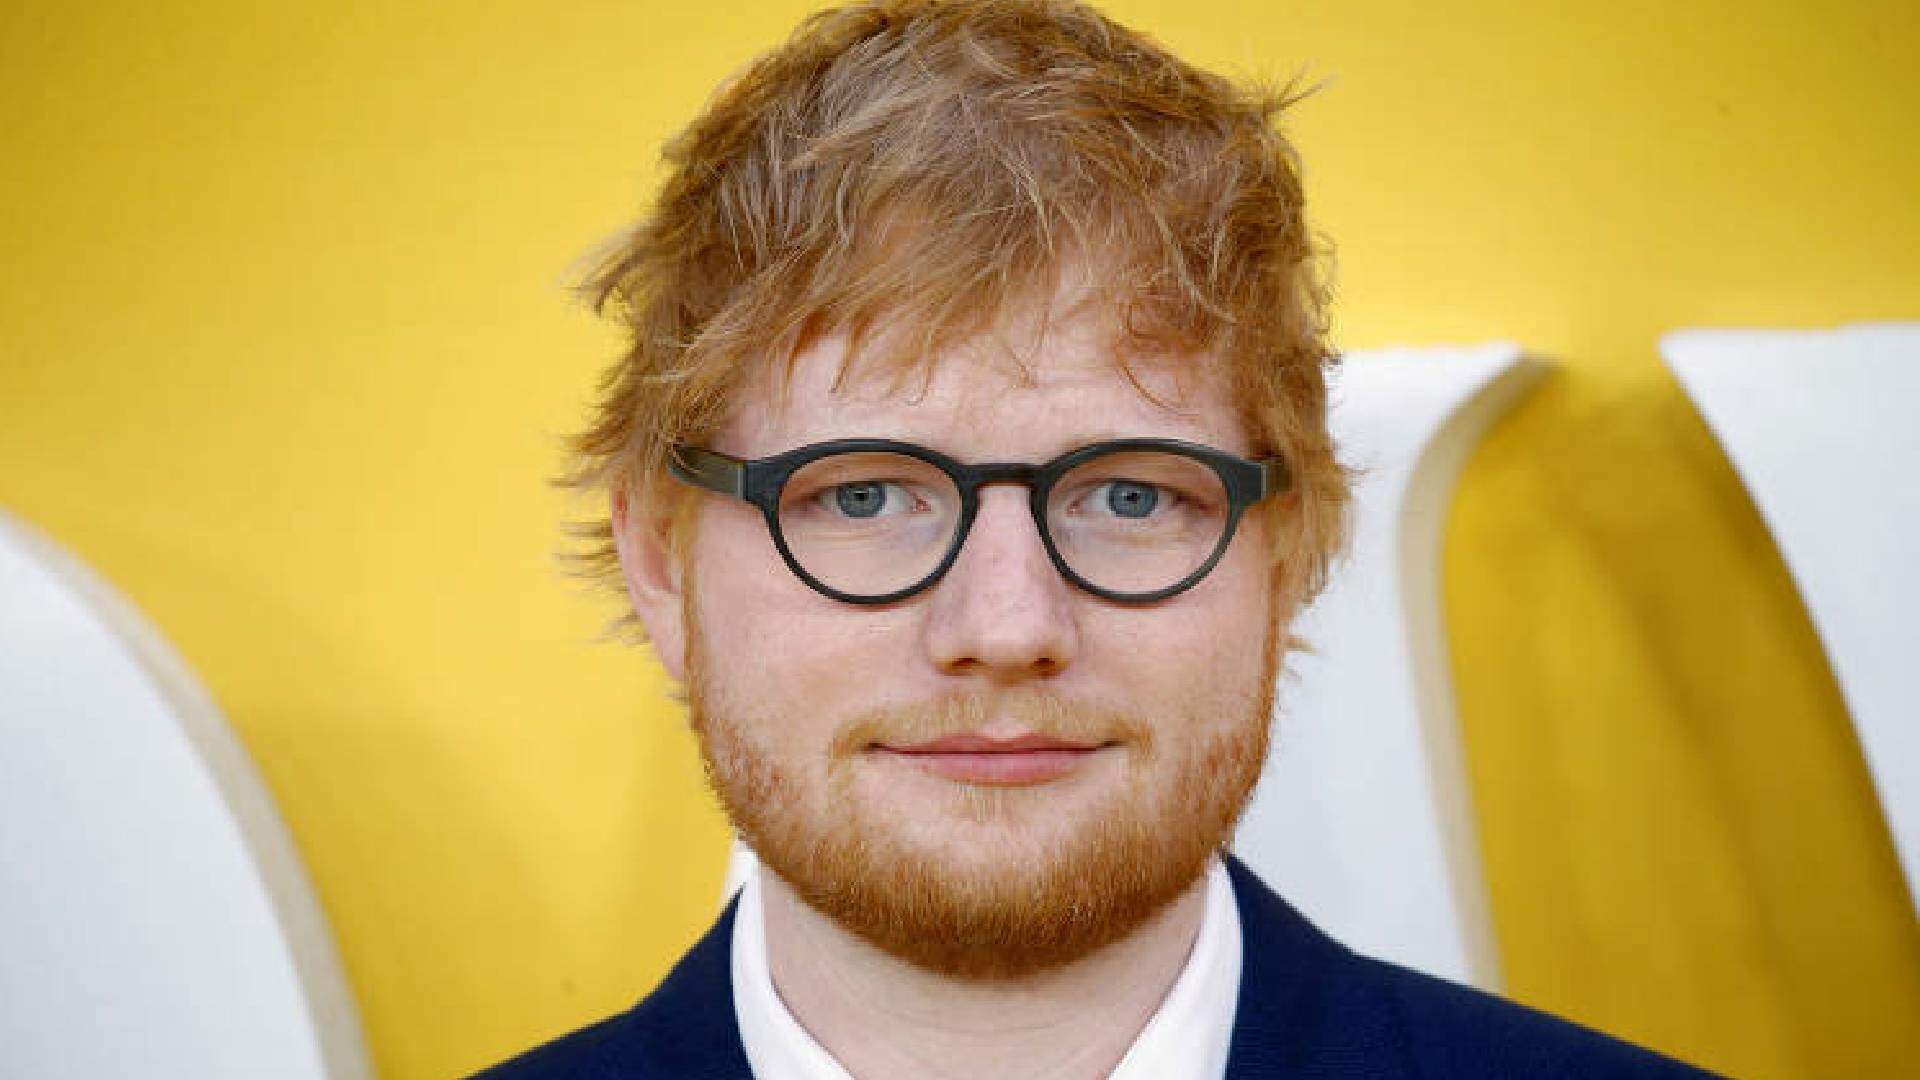 Ed Sheeran toma atitude séria após sofrer acusação grave e dá o que falar na web - Metropolitana FM